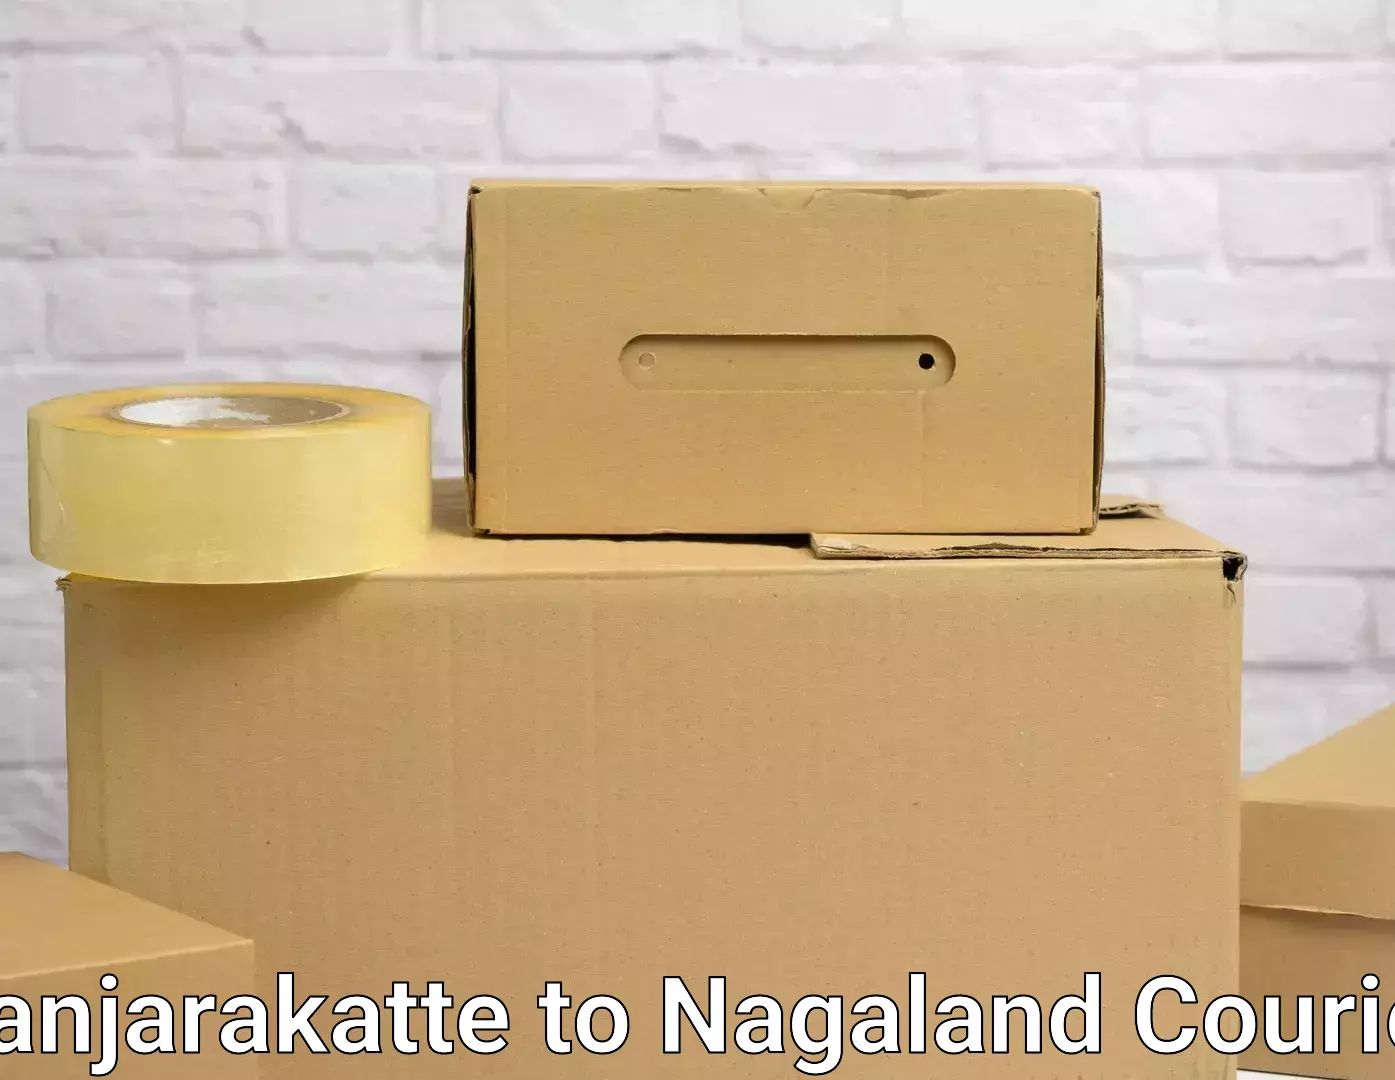 Nationwide furniture movers in Kanjarakatte to Longleng